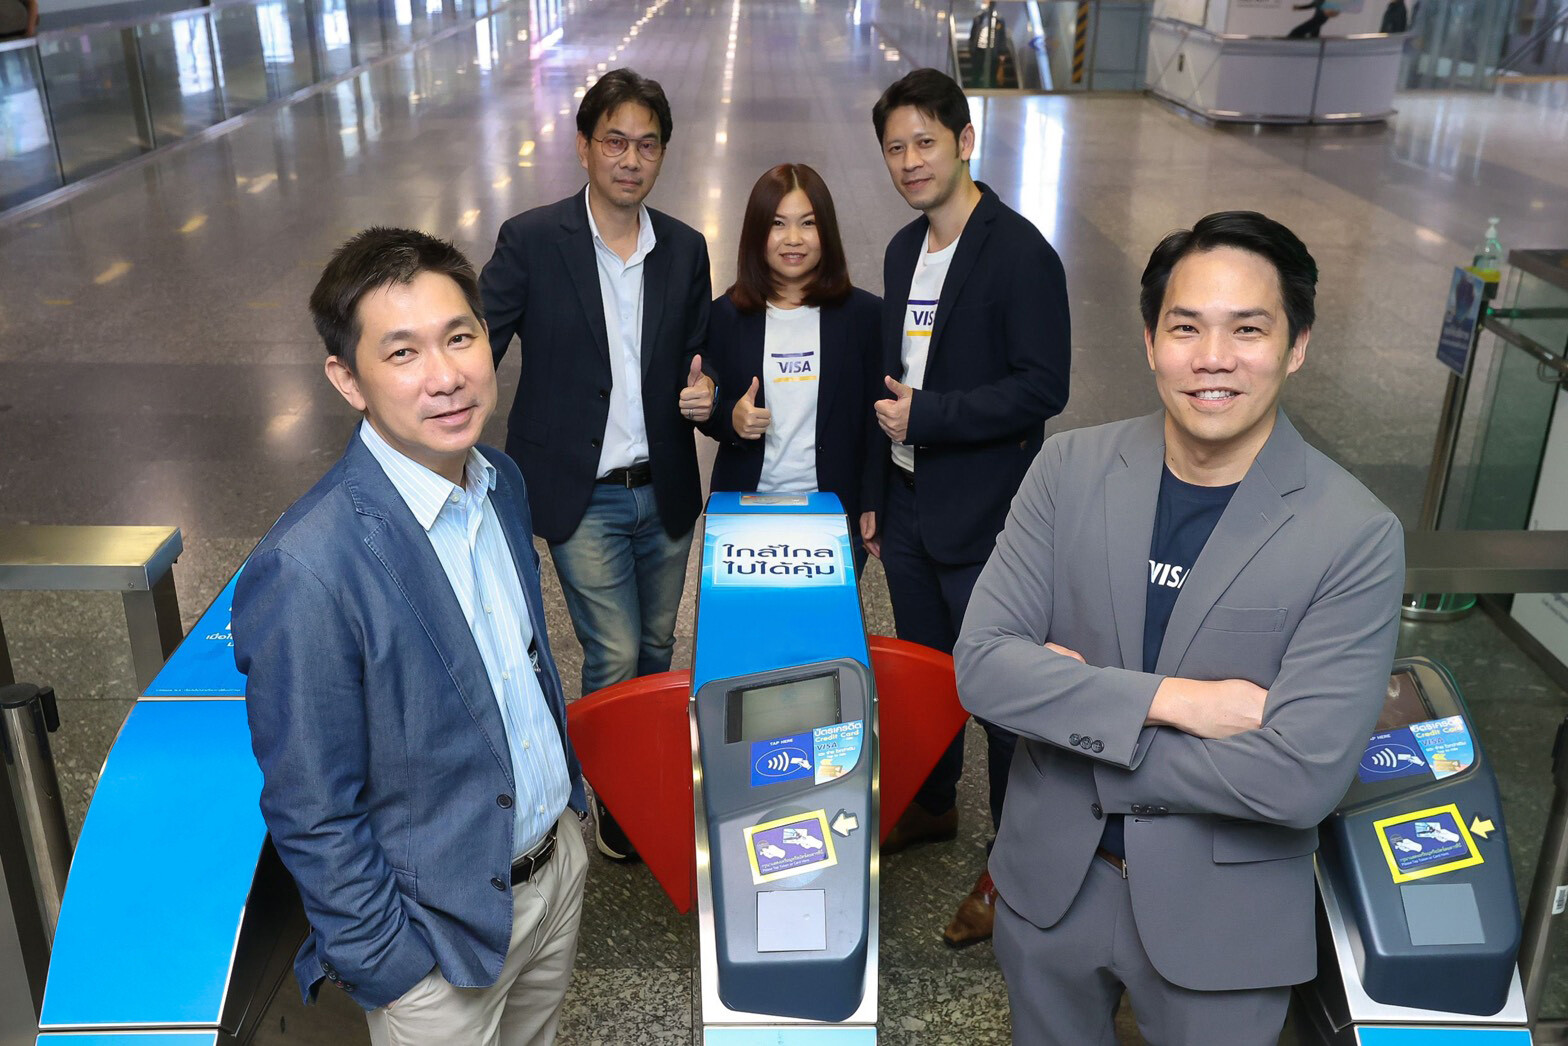 วีซ่า จับมือ ธนาคารกรุงไทย กรุยทางยกเครื่องระบบการชำระเงินเพื่อยกระดับการเดินทางคนกรุงเทพฯ